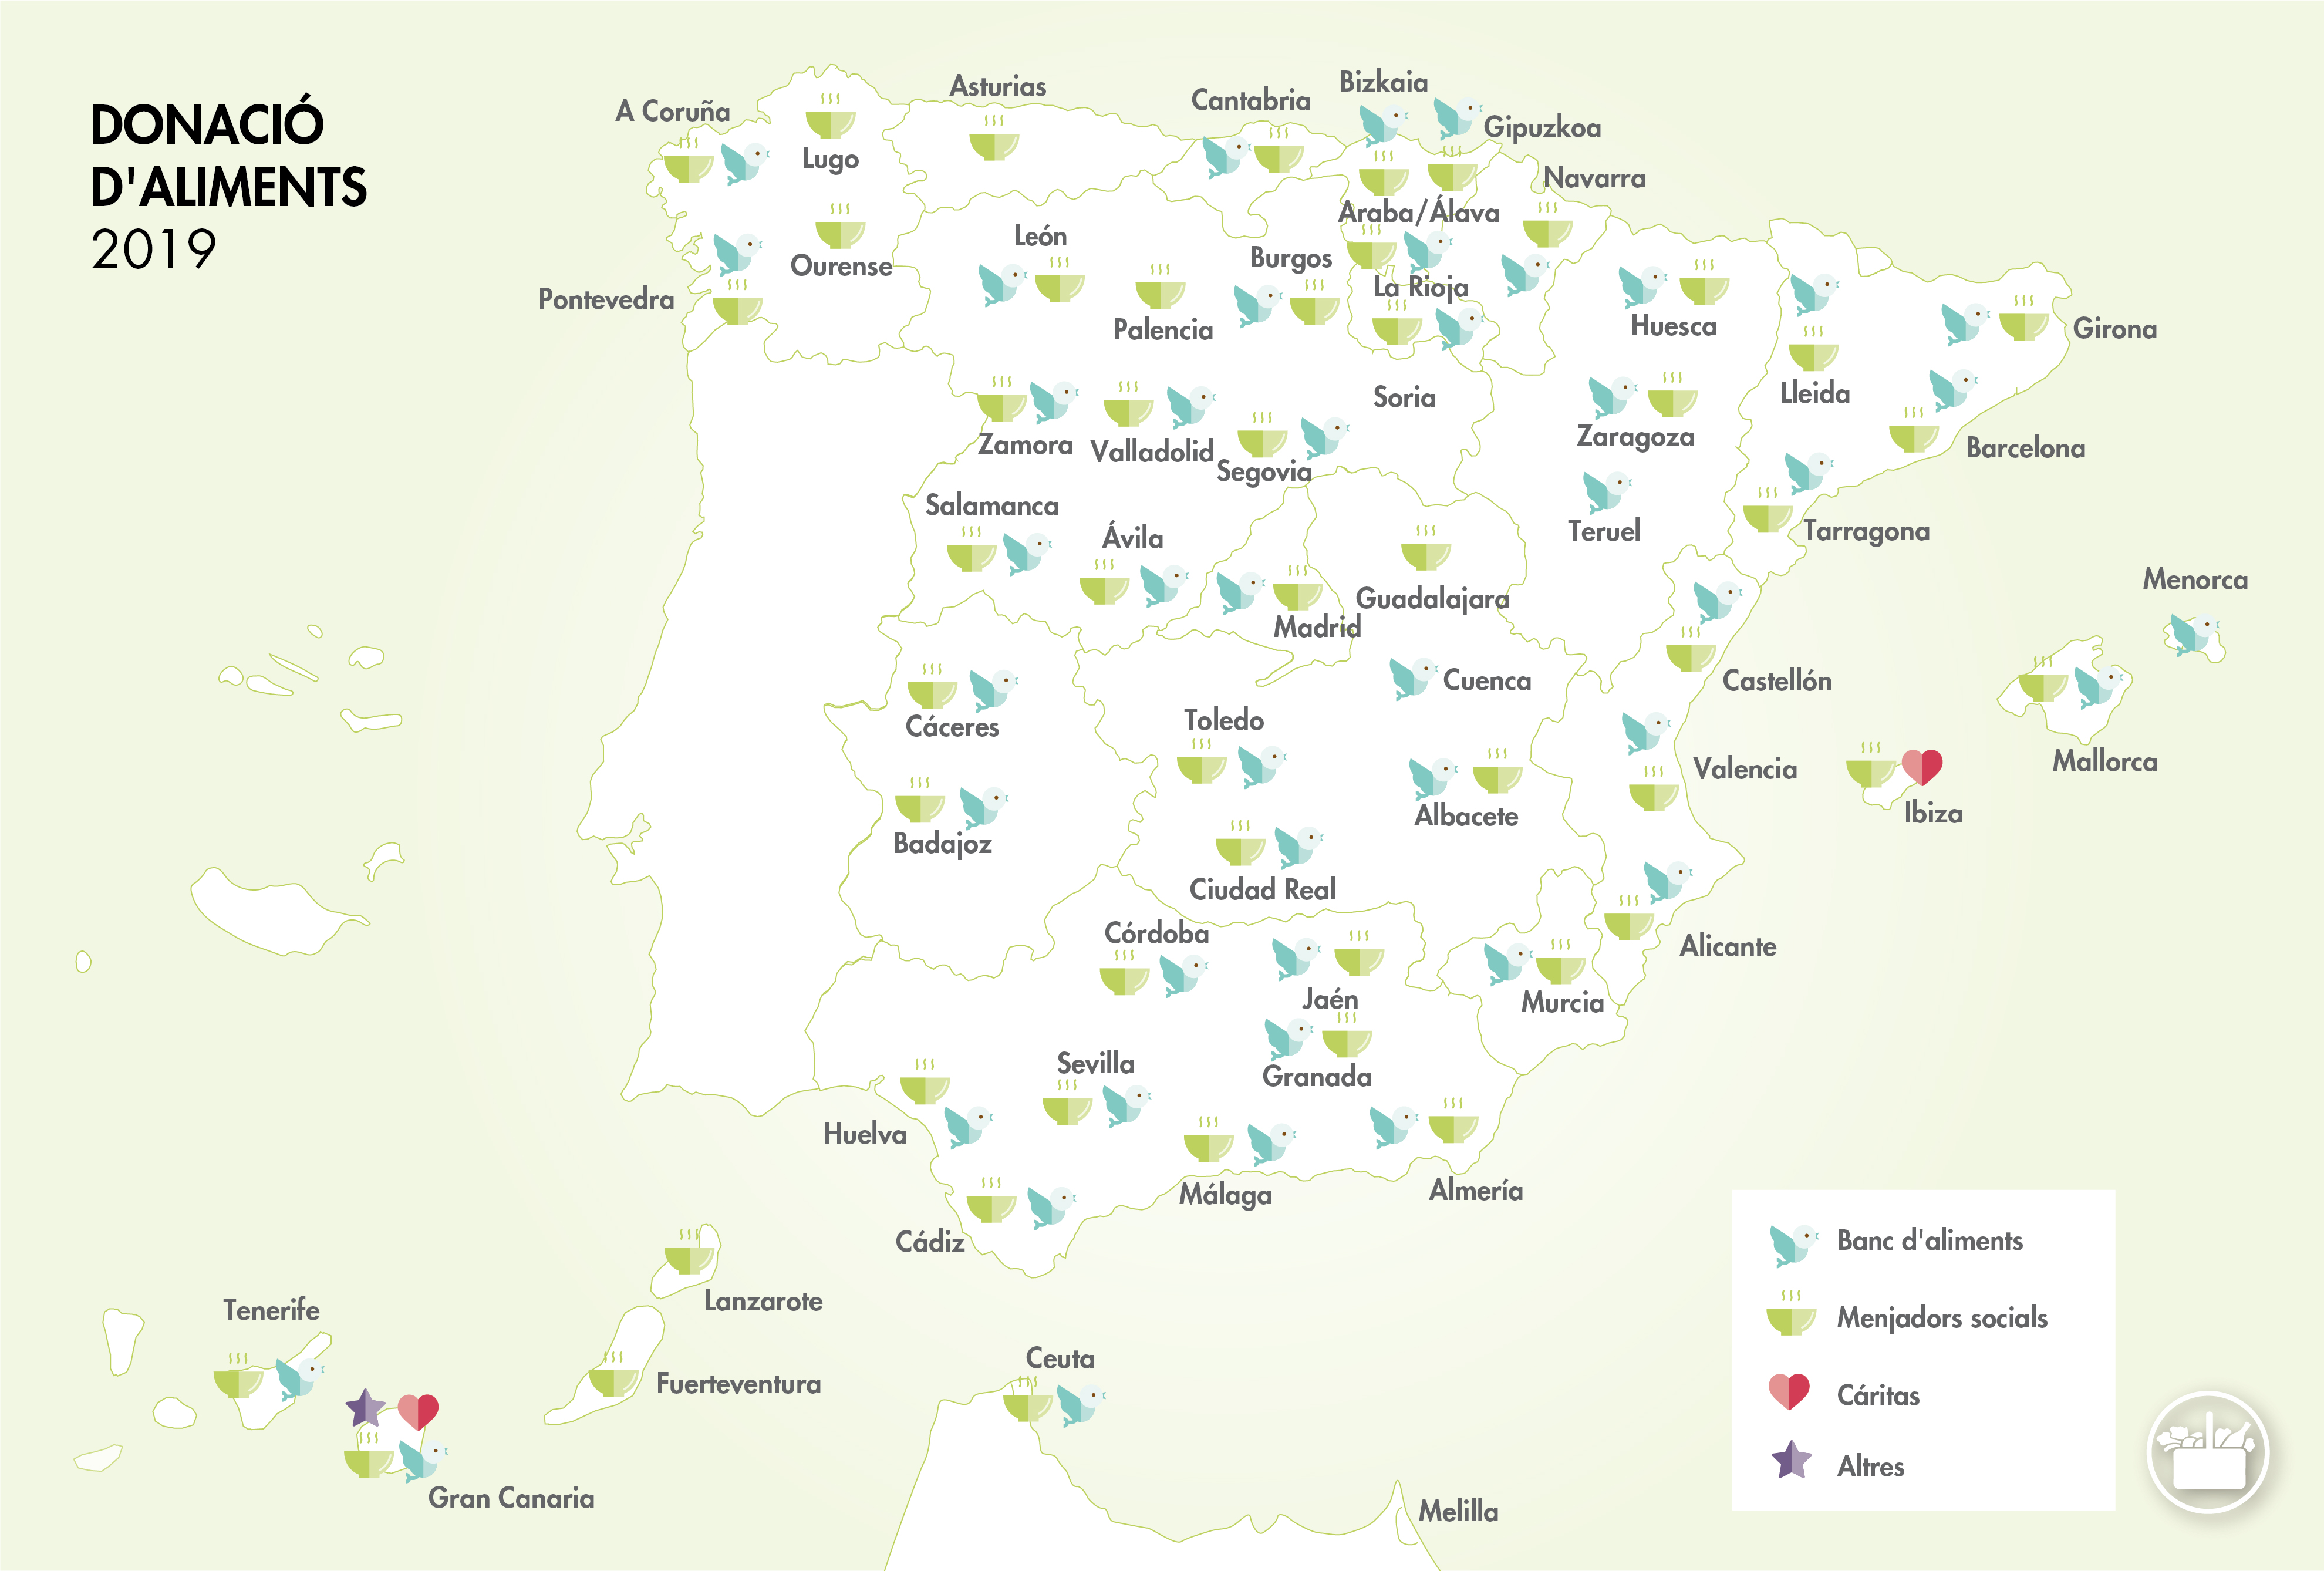 Mapa de donacions d’aliments 2019 de Mercadona a Espanya